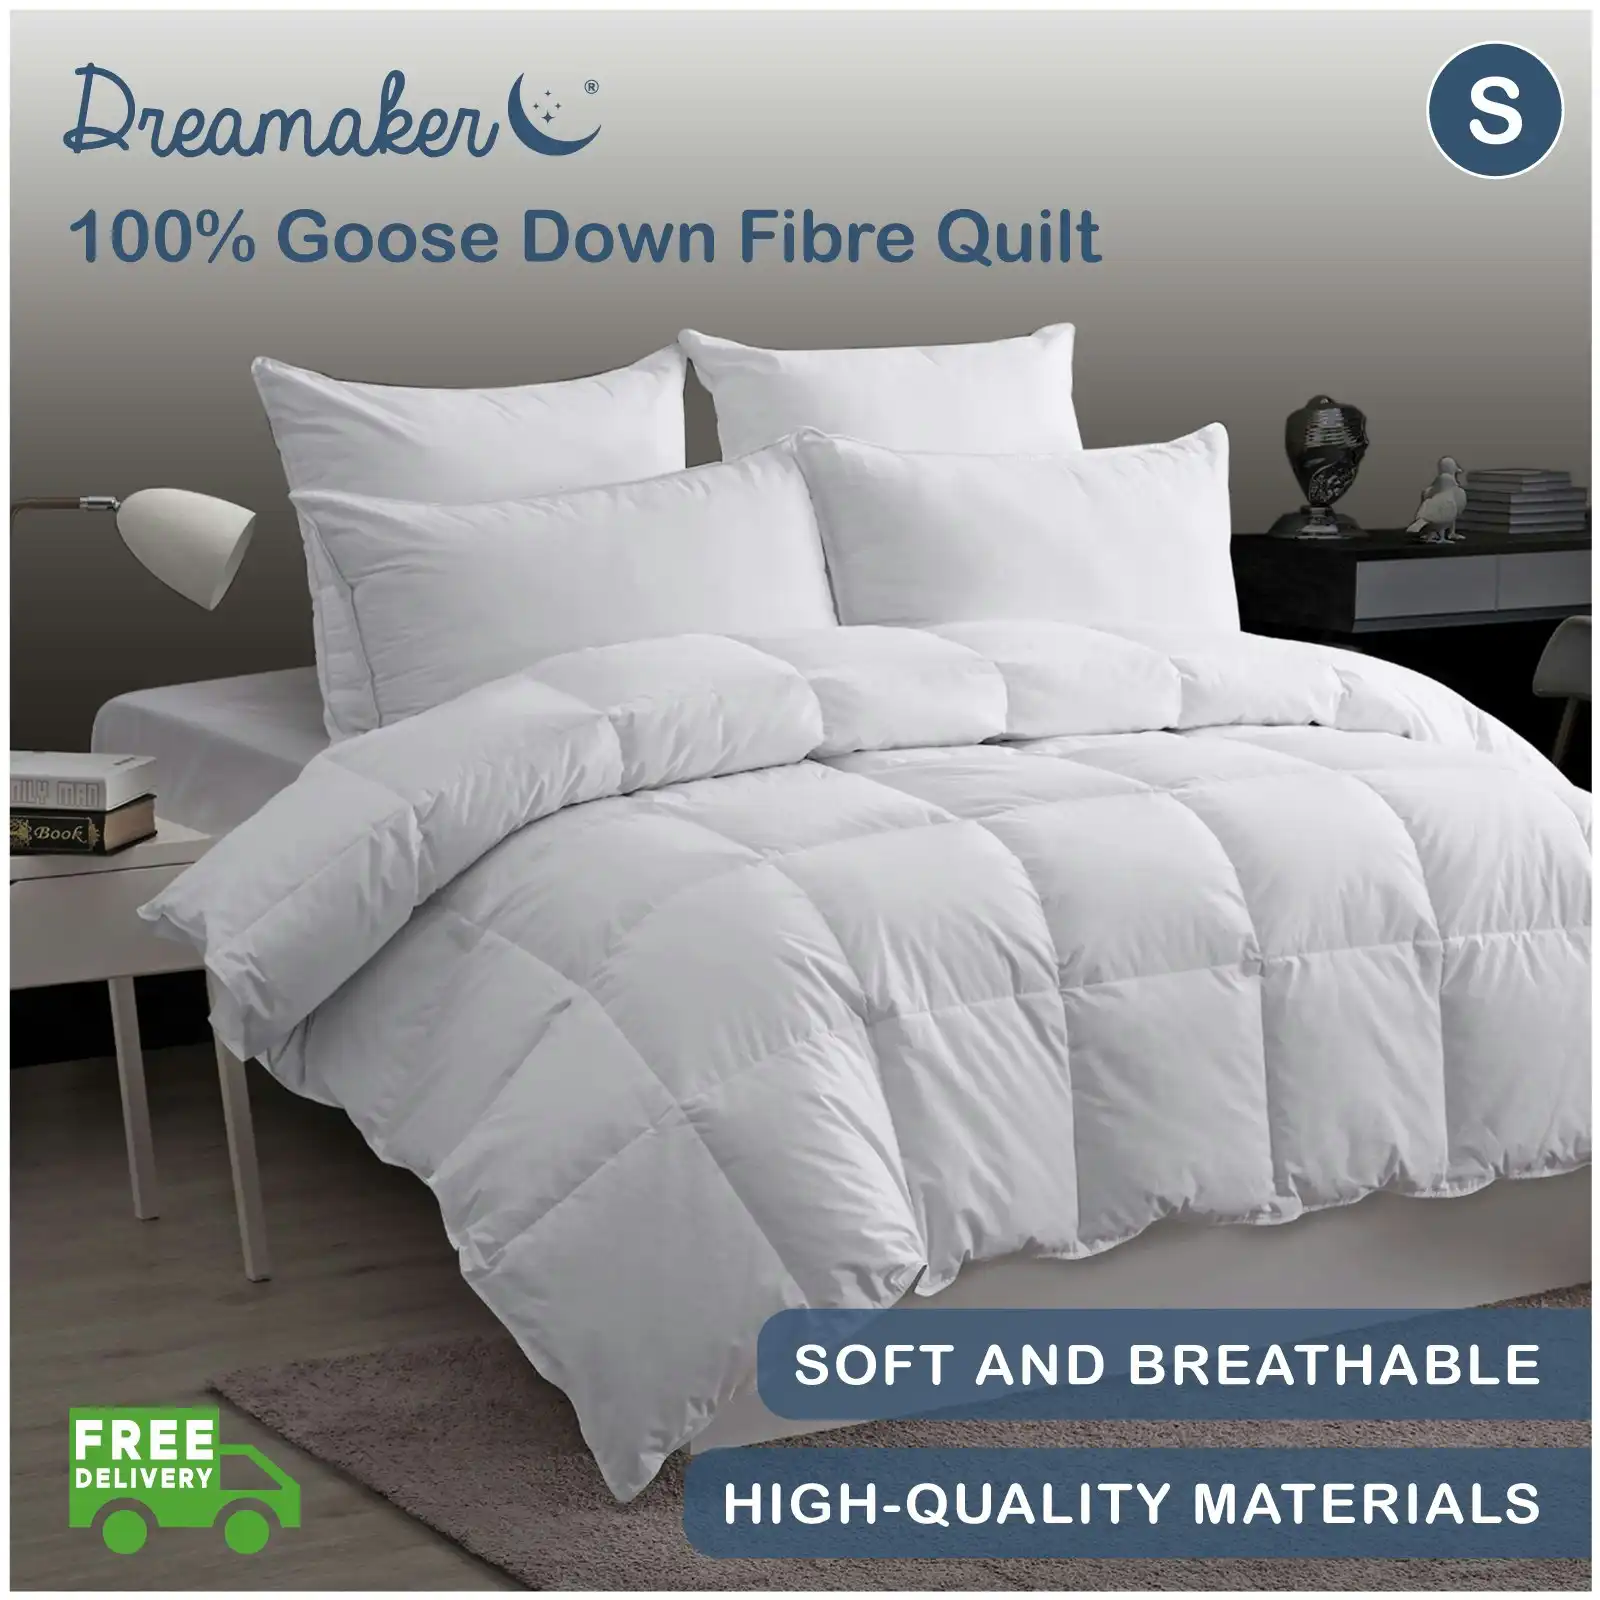 Dreamaker 100% Goose Down Fibre Quilt Single Bed